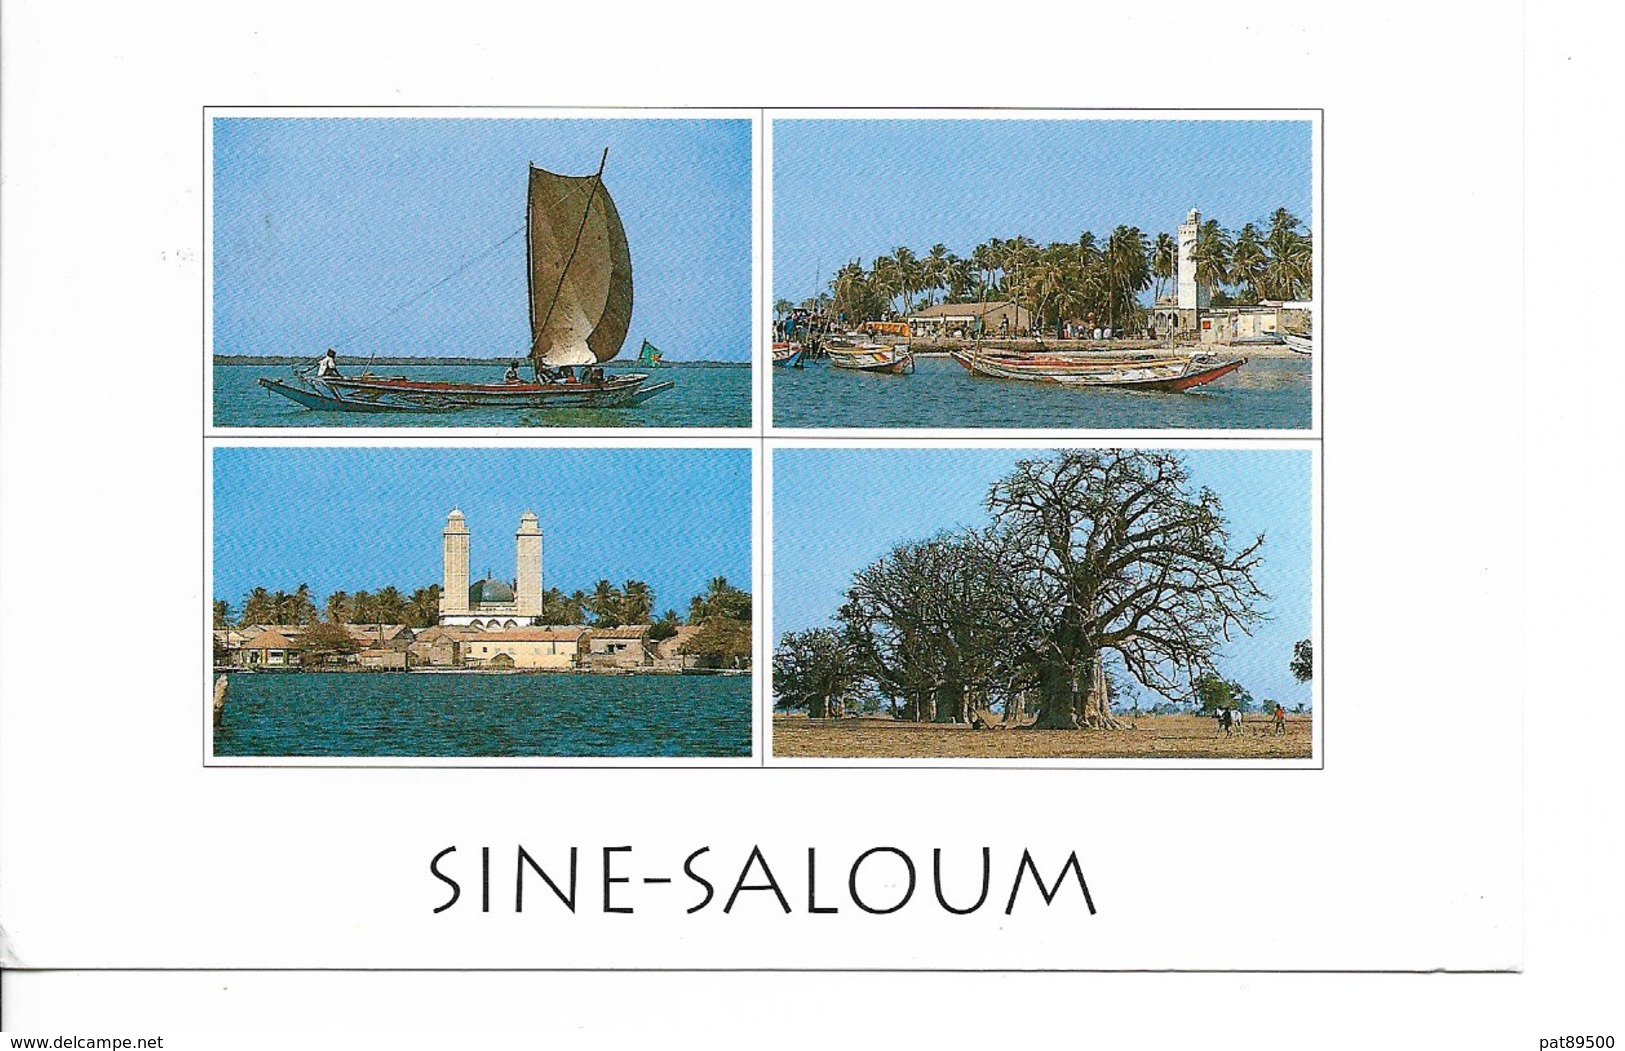 SENEGAL Fleuve SINE SALOUM Niodor, Dionewar, N'Dangane / CPM Multivues Voyagée 1995 / T. ST EXUPERY YT 1309 +++++ - Sénégal